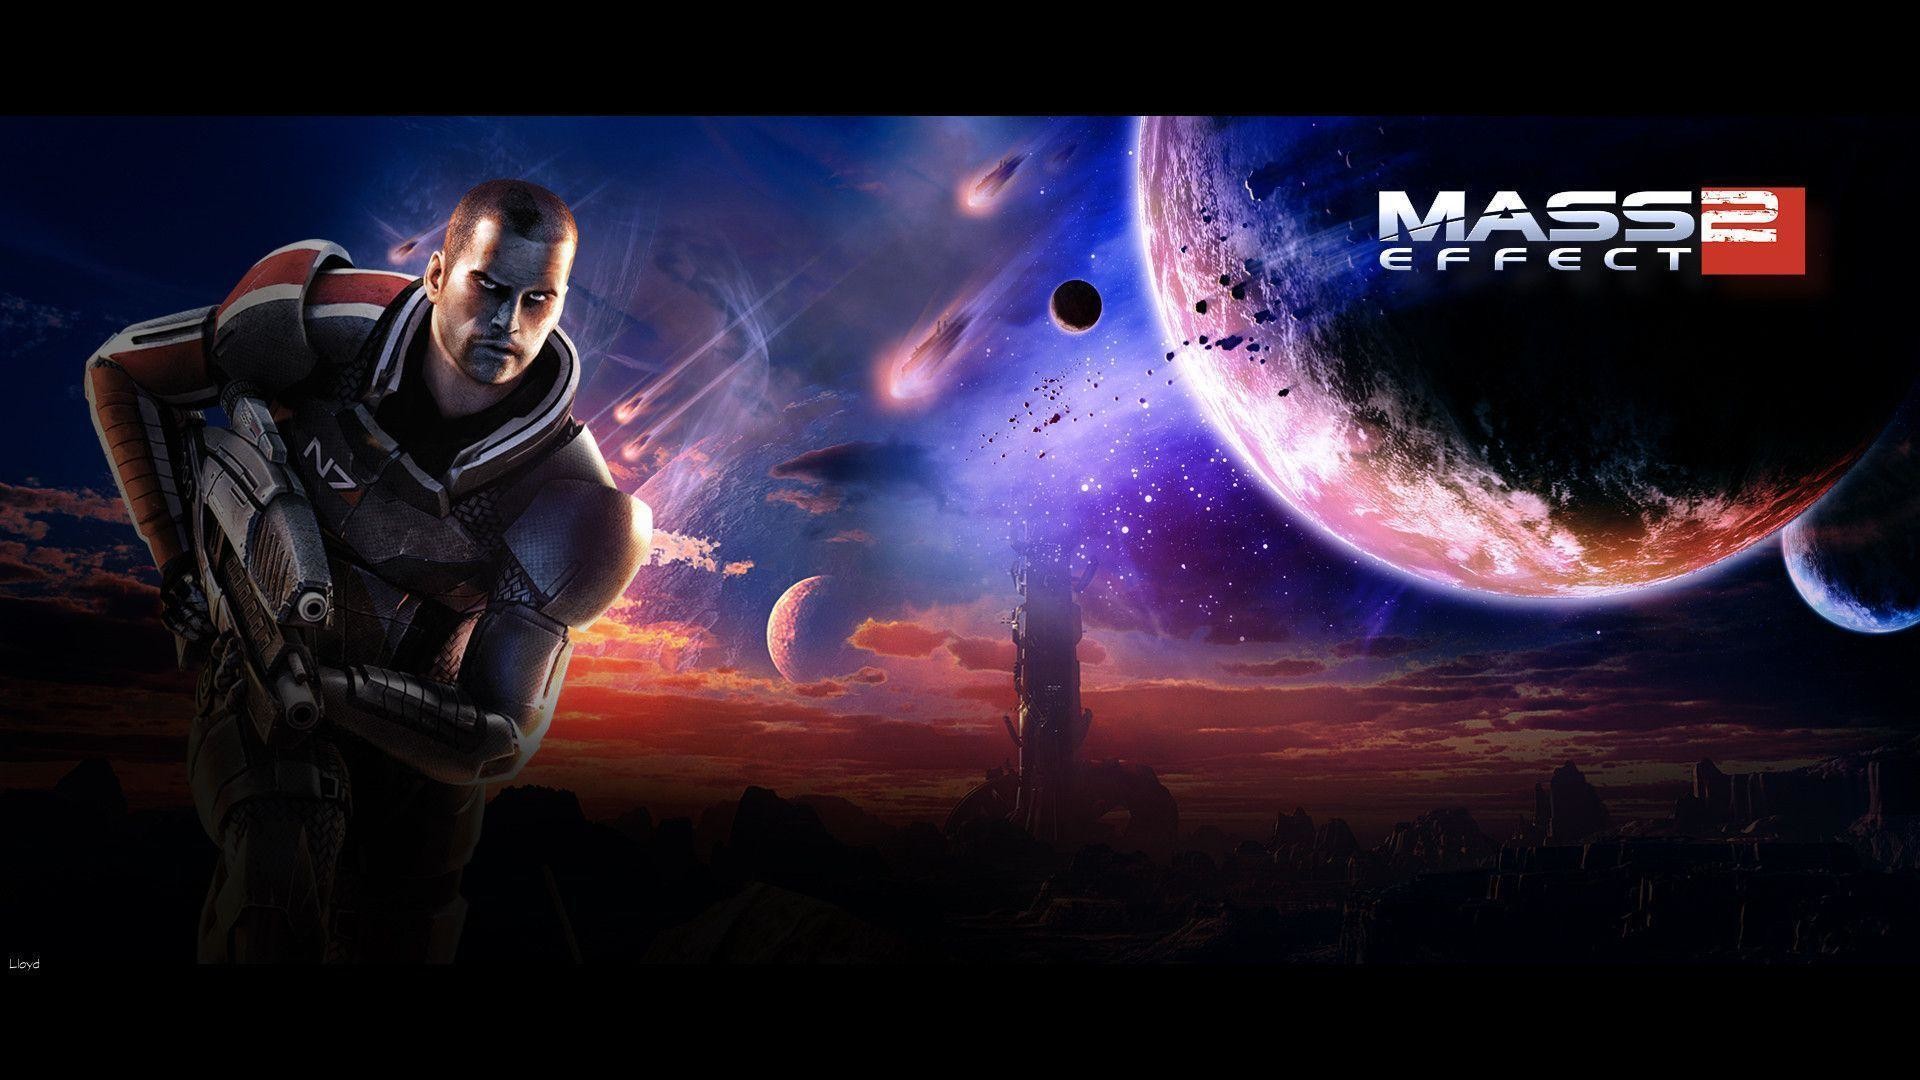 1920x1080 Wallpapers For > Mass Effect 1 Wallpaper 